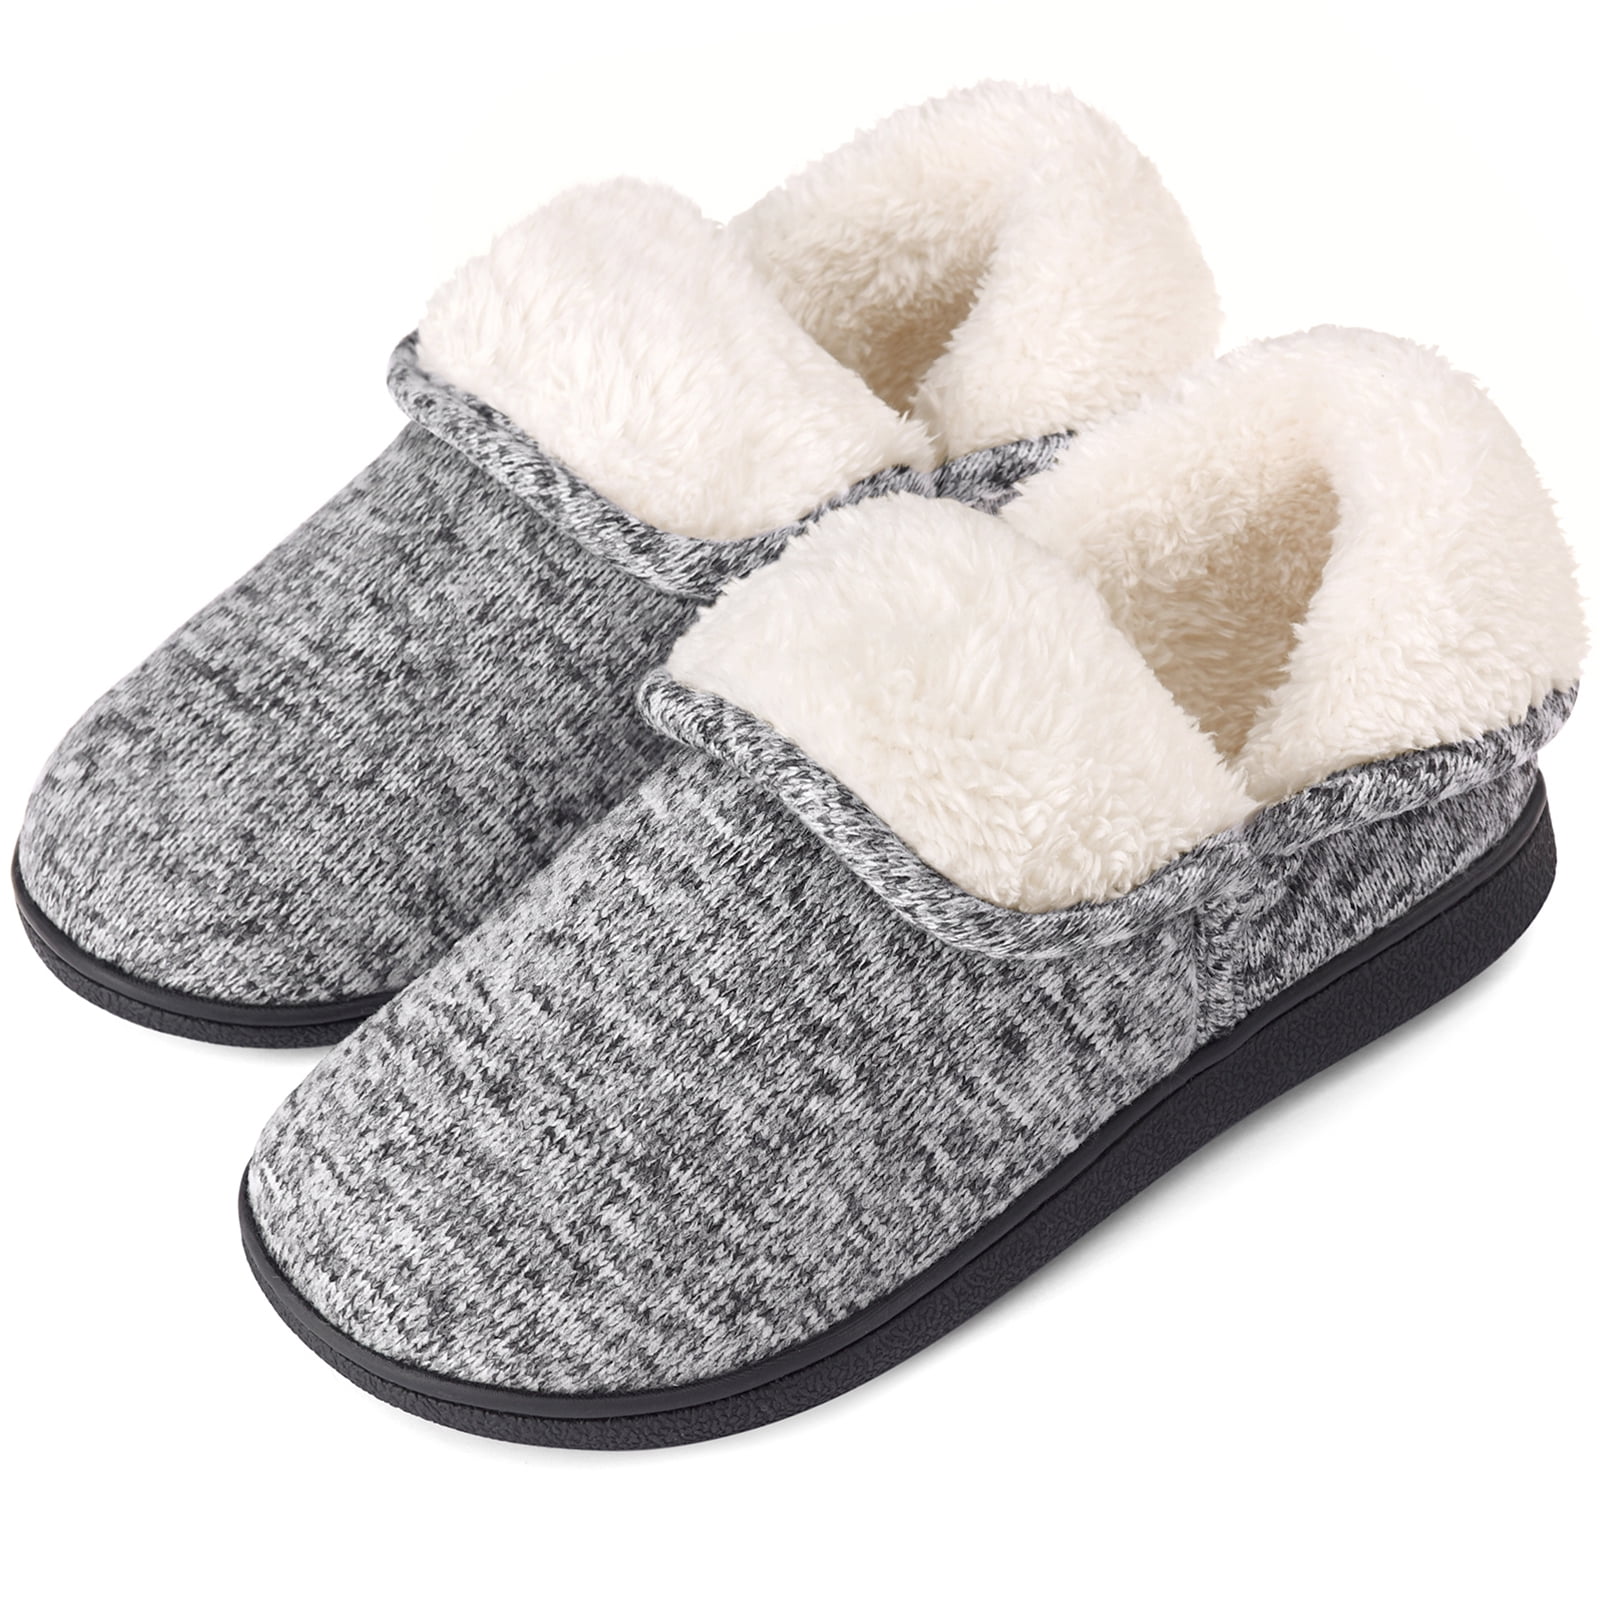 Women's Fuzzy Lightweight Memory Foam Slippers Warm Fleece House Shoes 